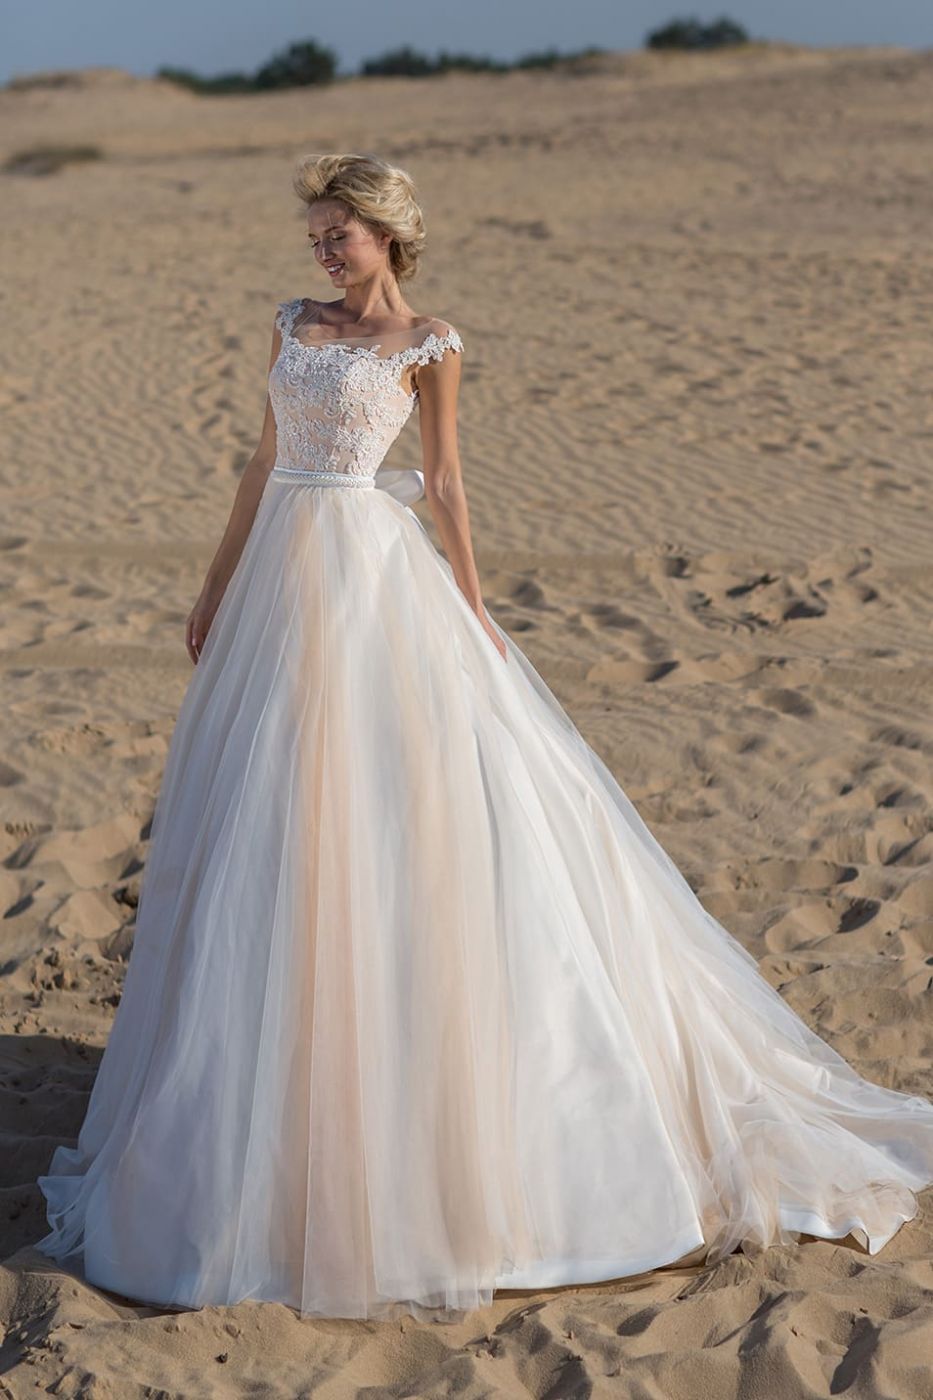 Свадебное платье в пудровом оттенке корсета и полупрозрачным верхом пышной юбки смотрится романтично Арт. 116